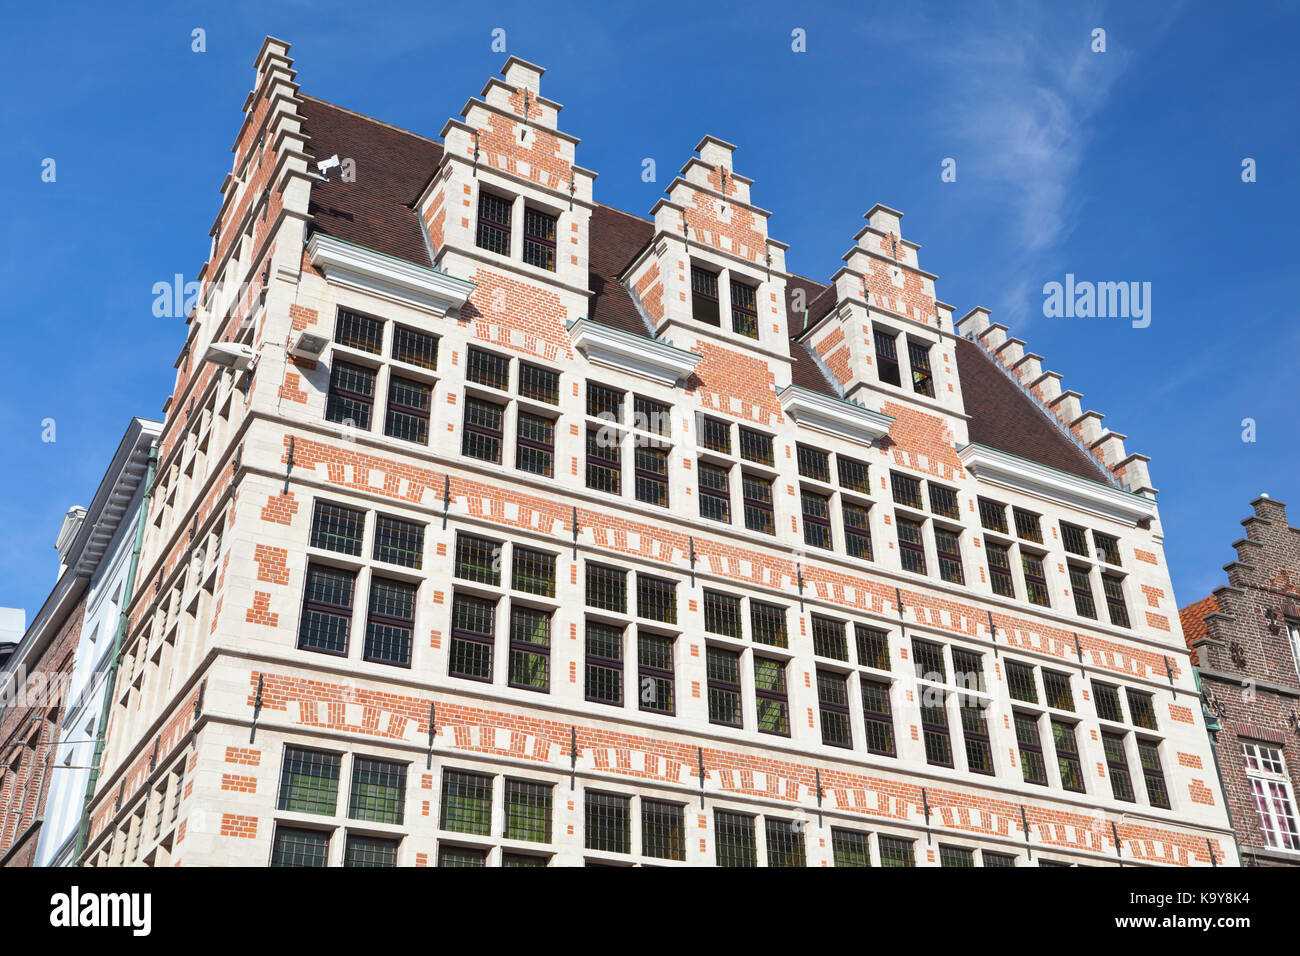 L'une des typiques et de beaux bâtiments de style ancien à Gand, Belgique. Banque D'Images